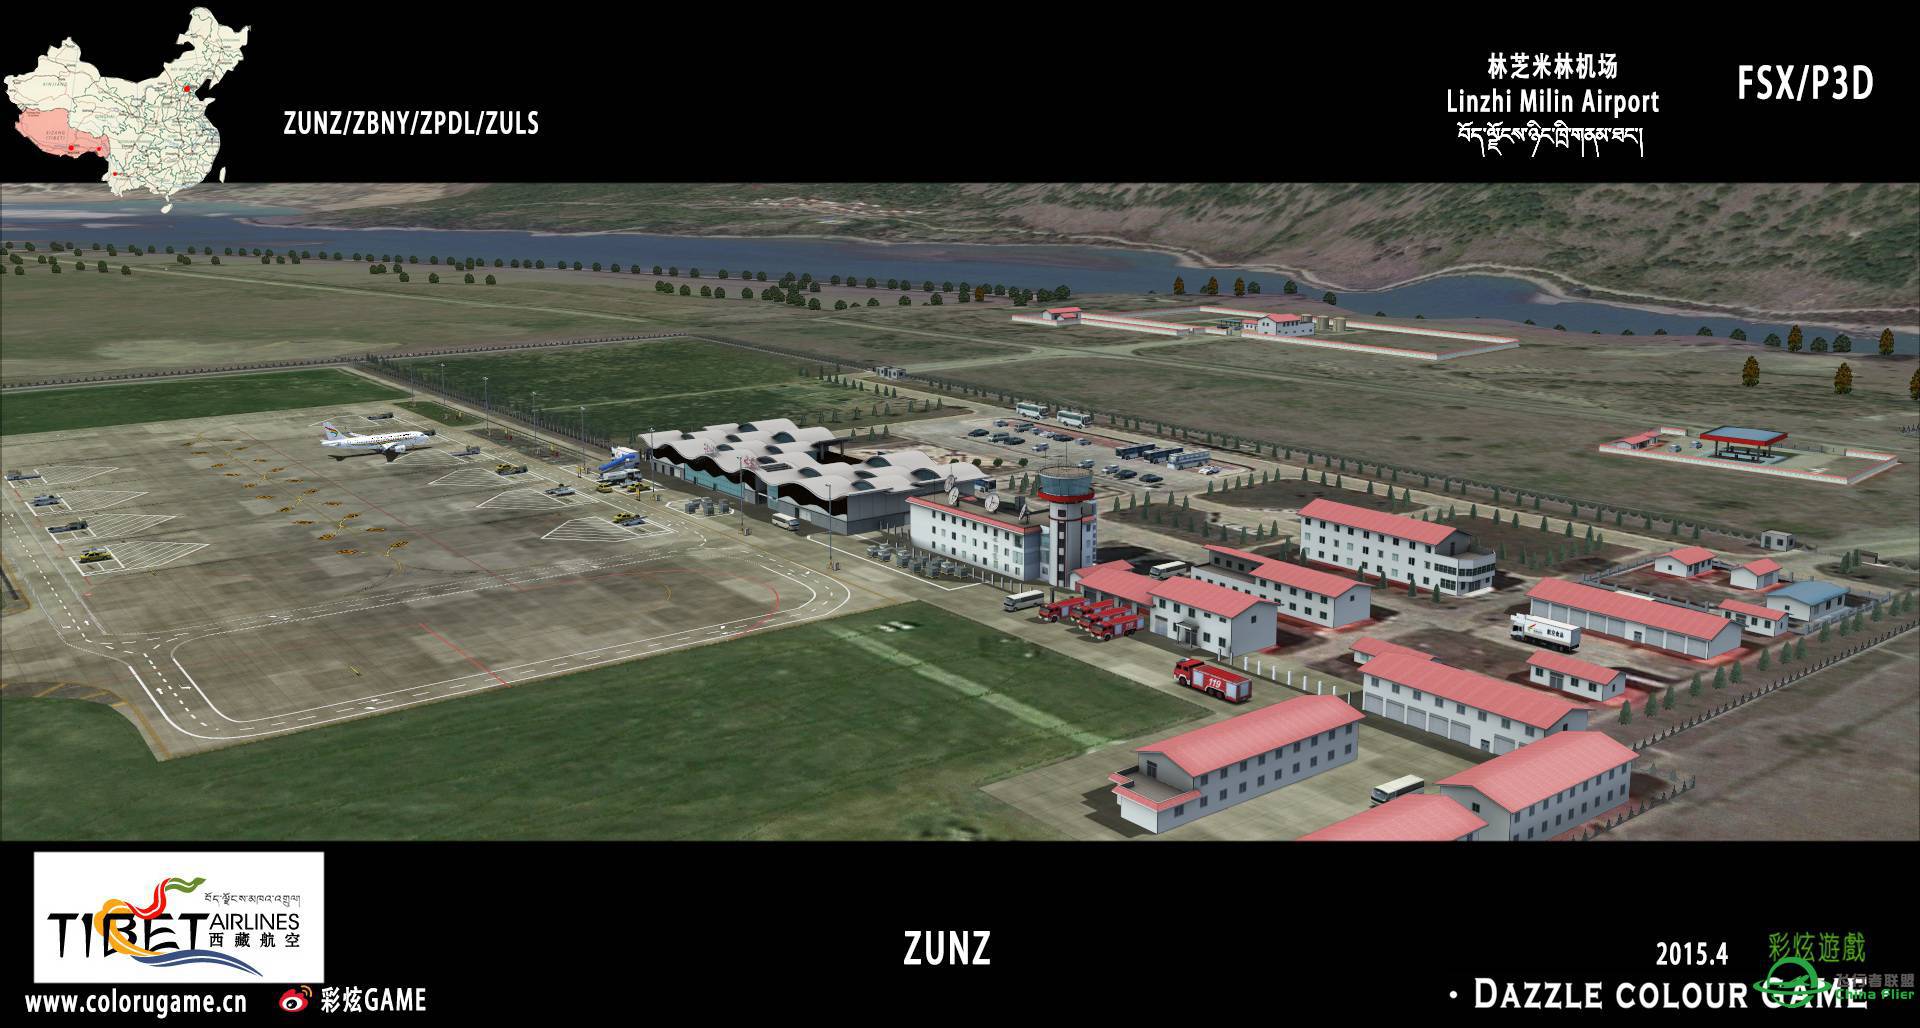 彩炫地景：林芝米林机场（ZUNZ）正式发布！-7049 